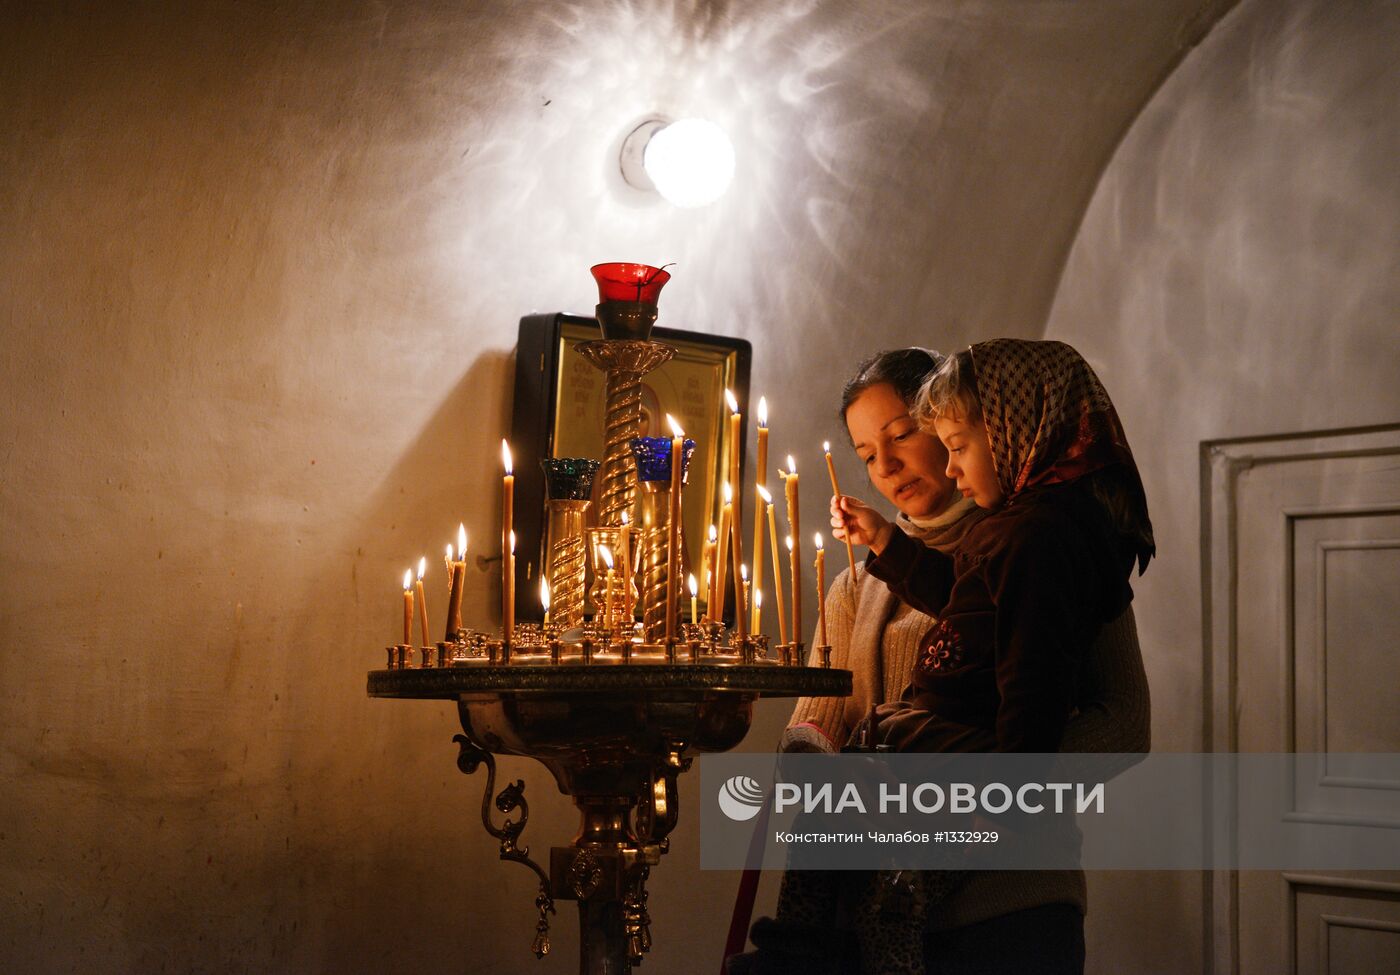 Празднование Рождества Христова в Новгородской области